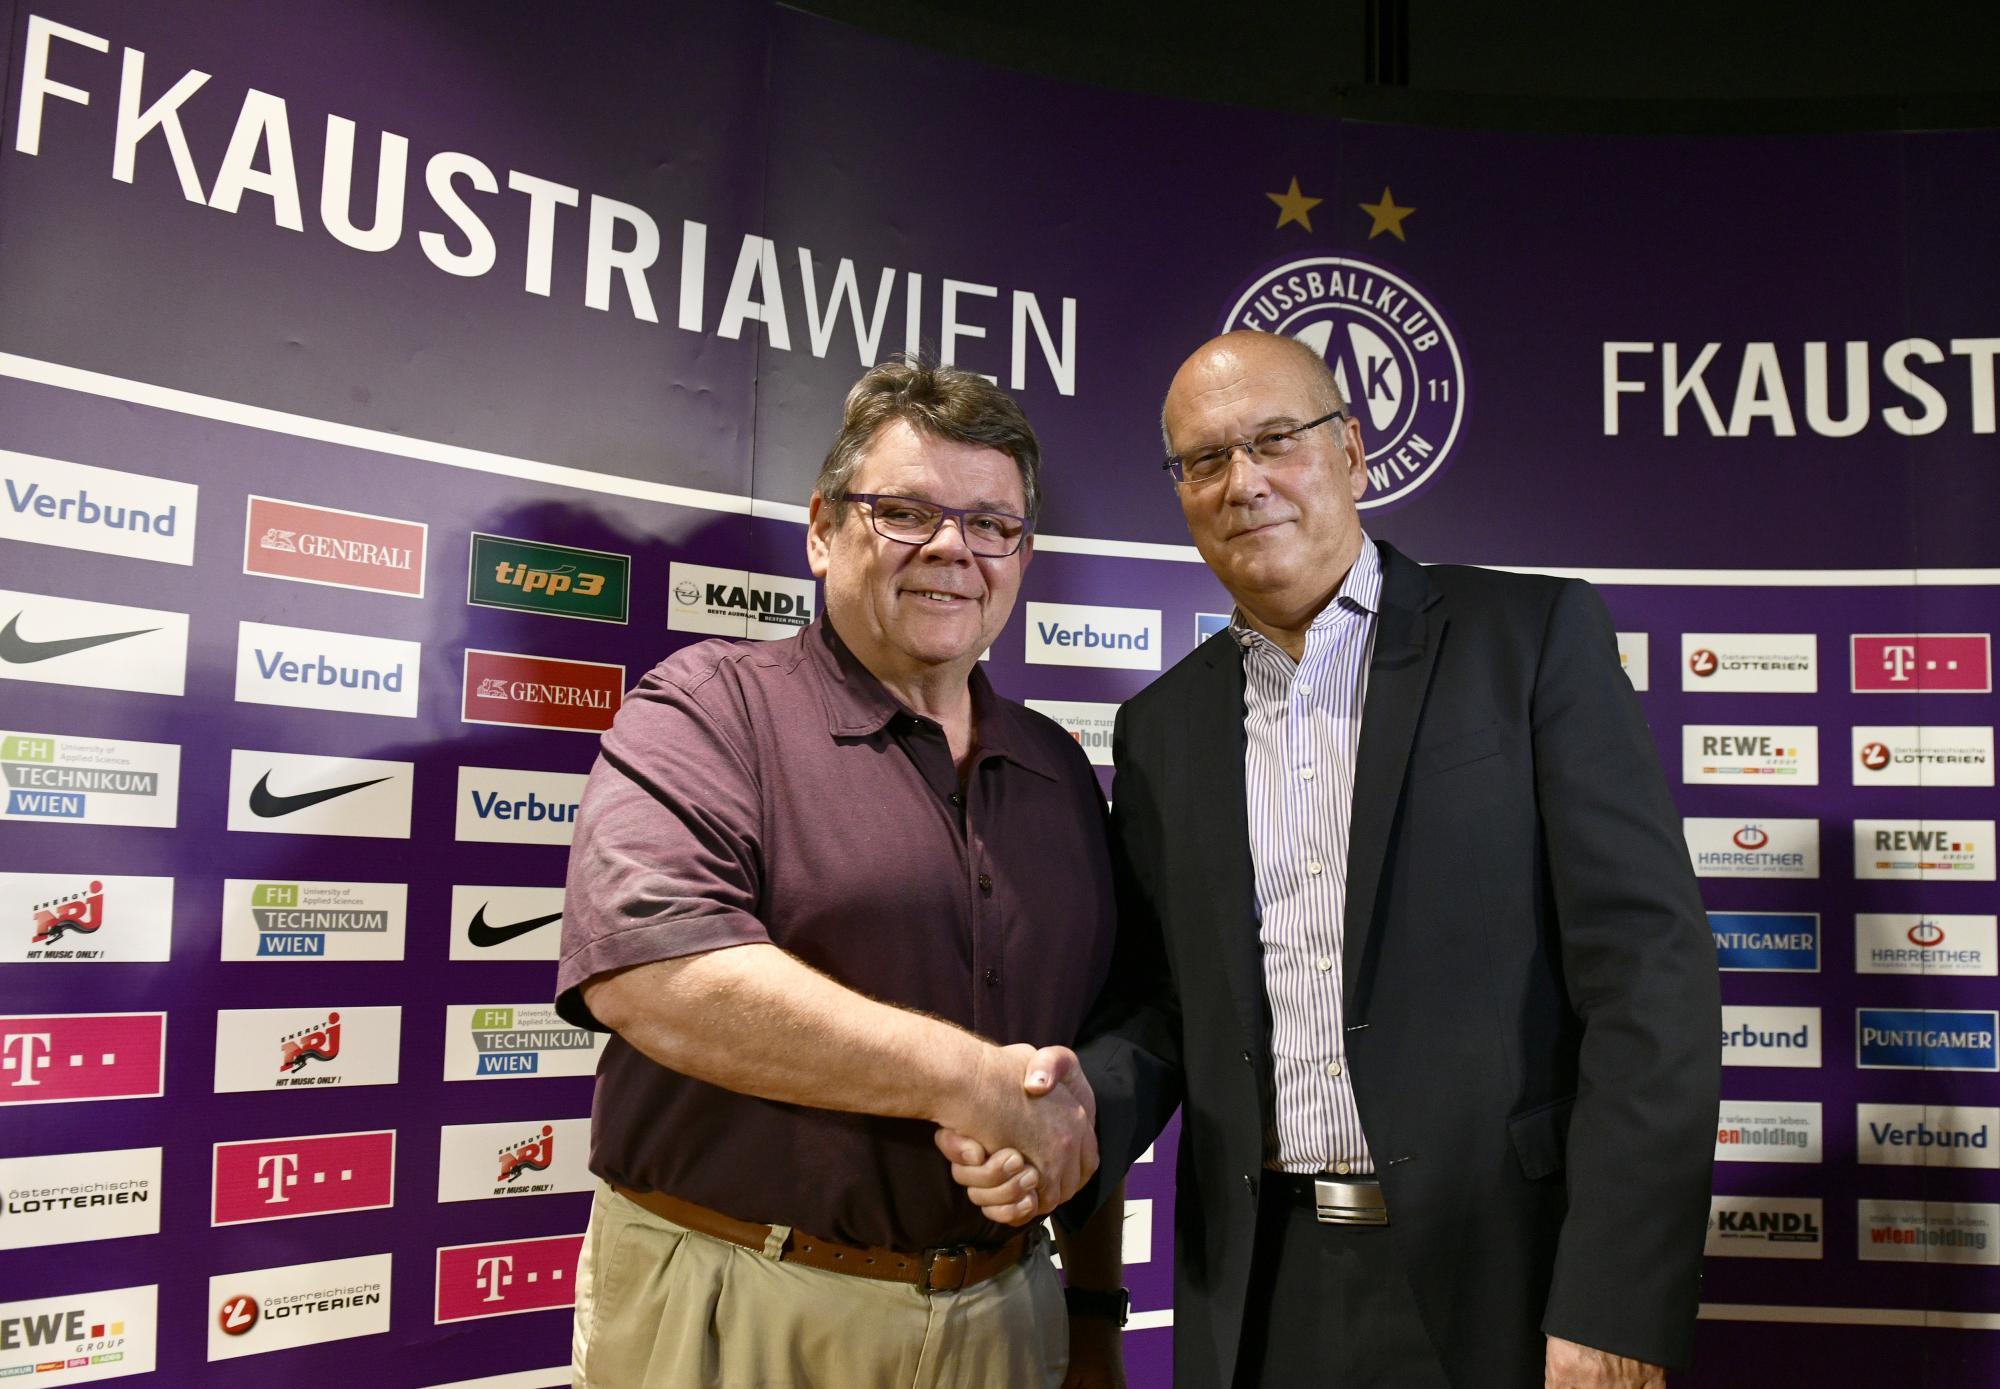 FUSSBALL: NEUER PRÄSIDENT DES FK AUSTRIA WIEN: HENSEL / KATZIAN